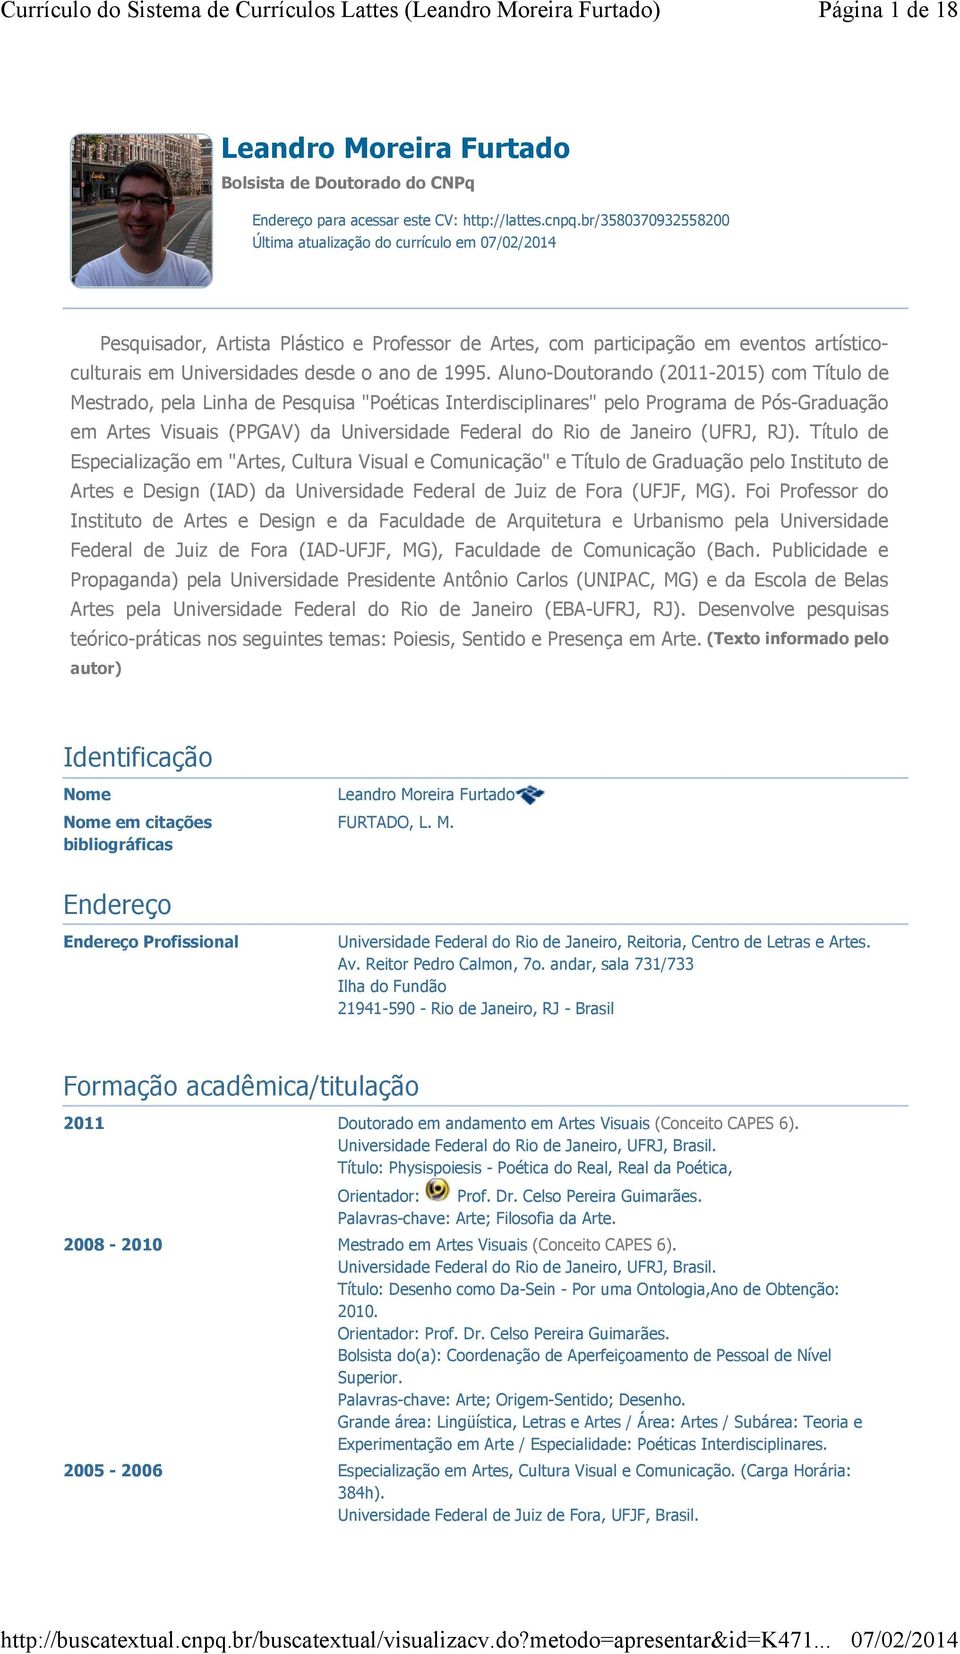 Aluno-Doutorando (2011-2015) com Título de Mestrado, pela Linha de Pesquisa "Poéticas Interdisciplinares" pelo Programa de Pós-Graduação em Artes Visuais (PPGAV) da Universidade Federal do Rio de